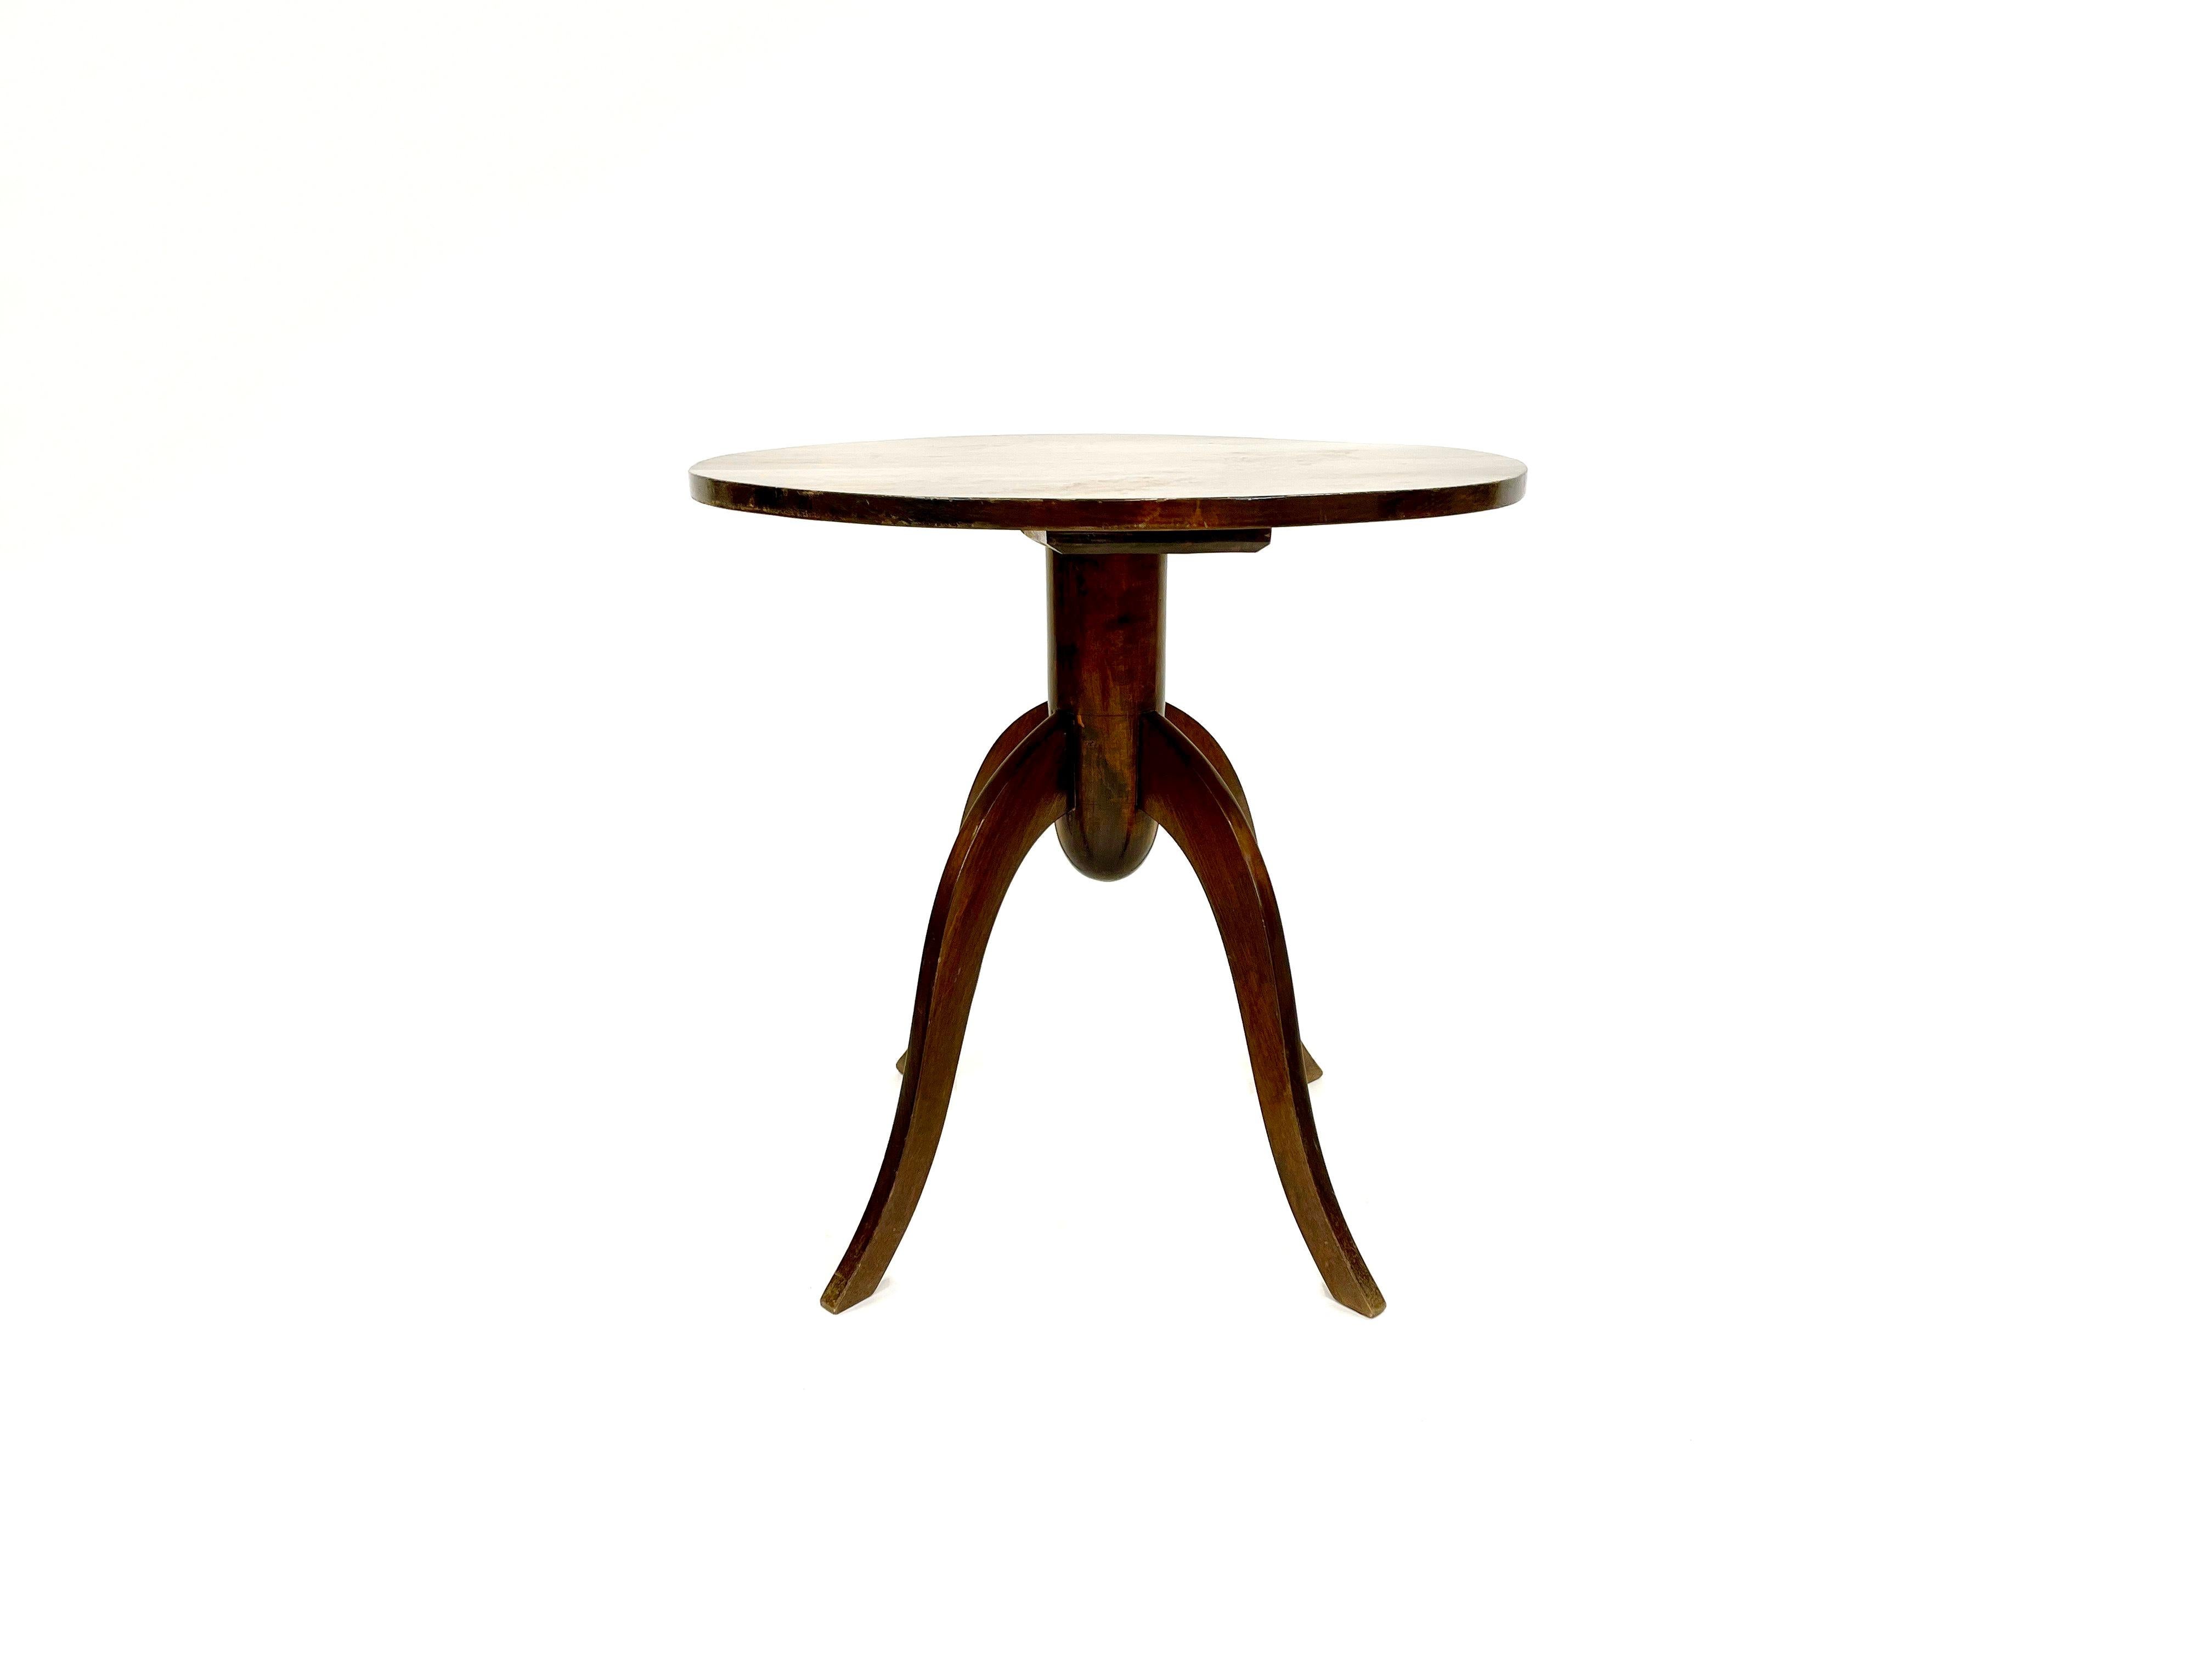 Rare table d'appoint finlandaise moderne Gunnel Nyman à quatre pieds. Cette trouvaille exceptionnellement rare, une version plus grande à quatre pattes, témoigne de l'influence durable du designer sur le design finlandais. Avec son mélange distinct